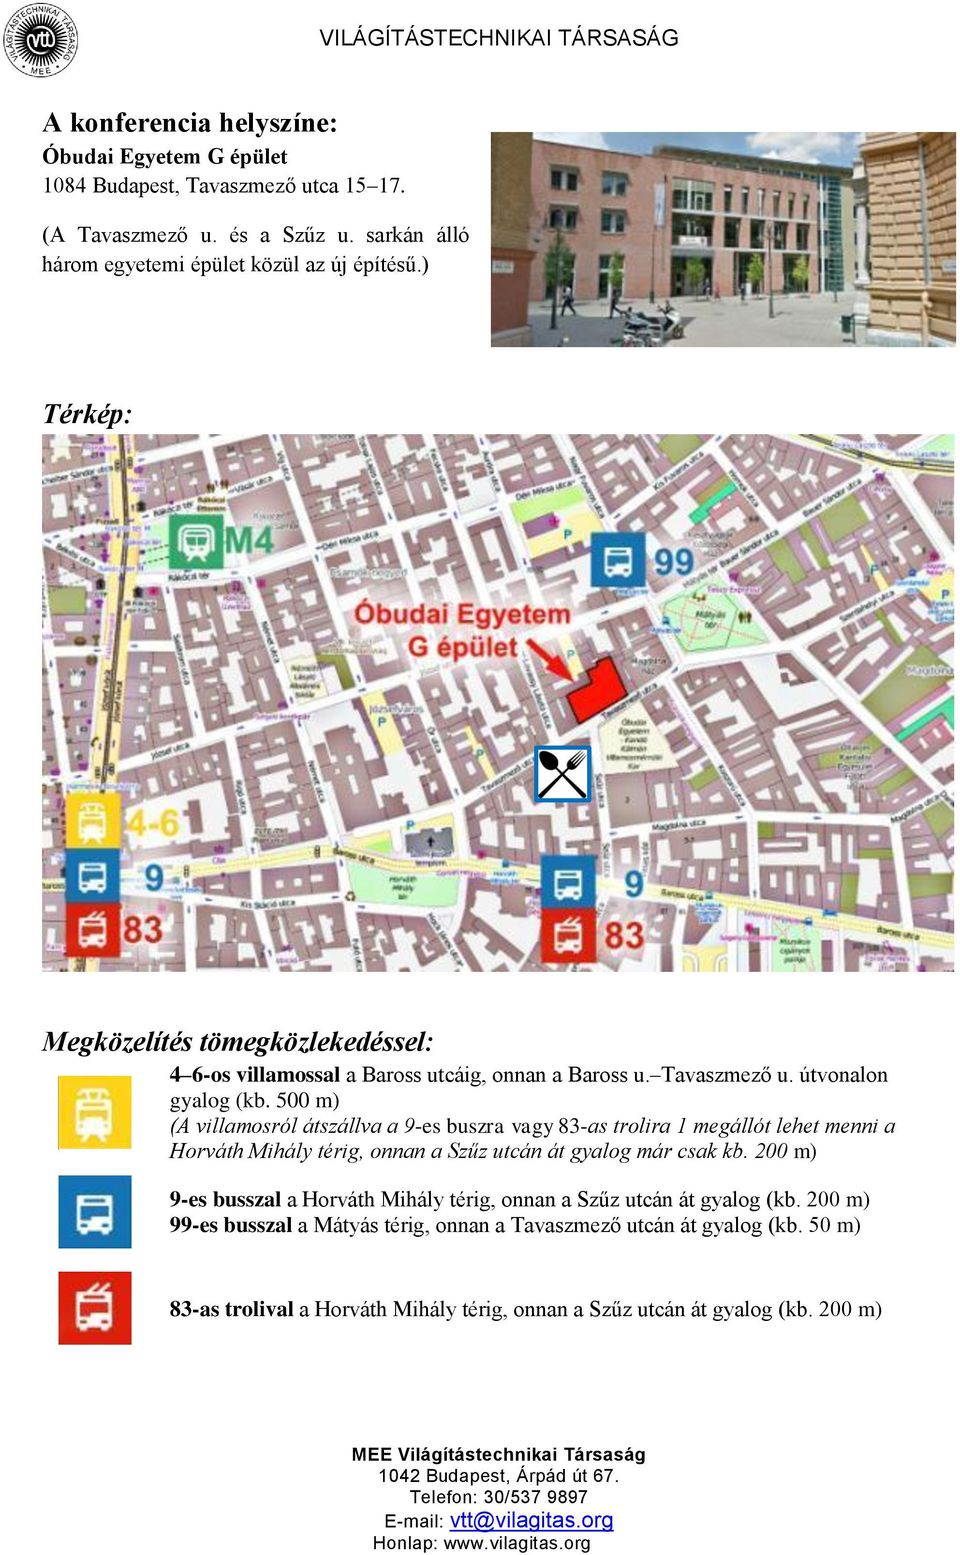 500 m) (A villamosról átszállva a 9-es buszra vagy 83-as trolira 1 megállót lehet menni a Horváth Mihály térig, onnan a Szűz utcán át gyalog már csak kb.